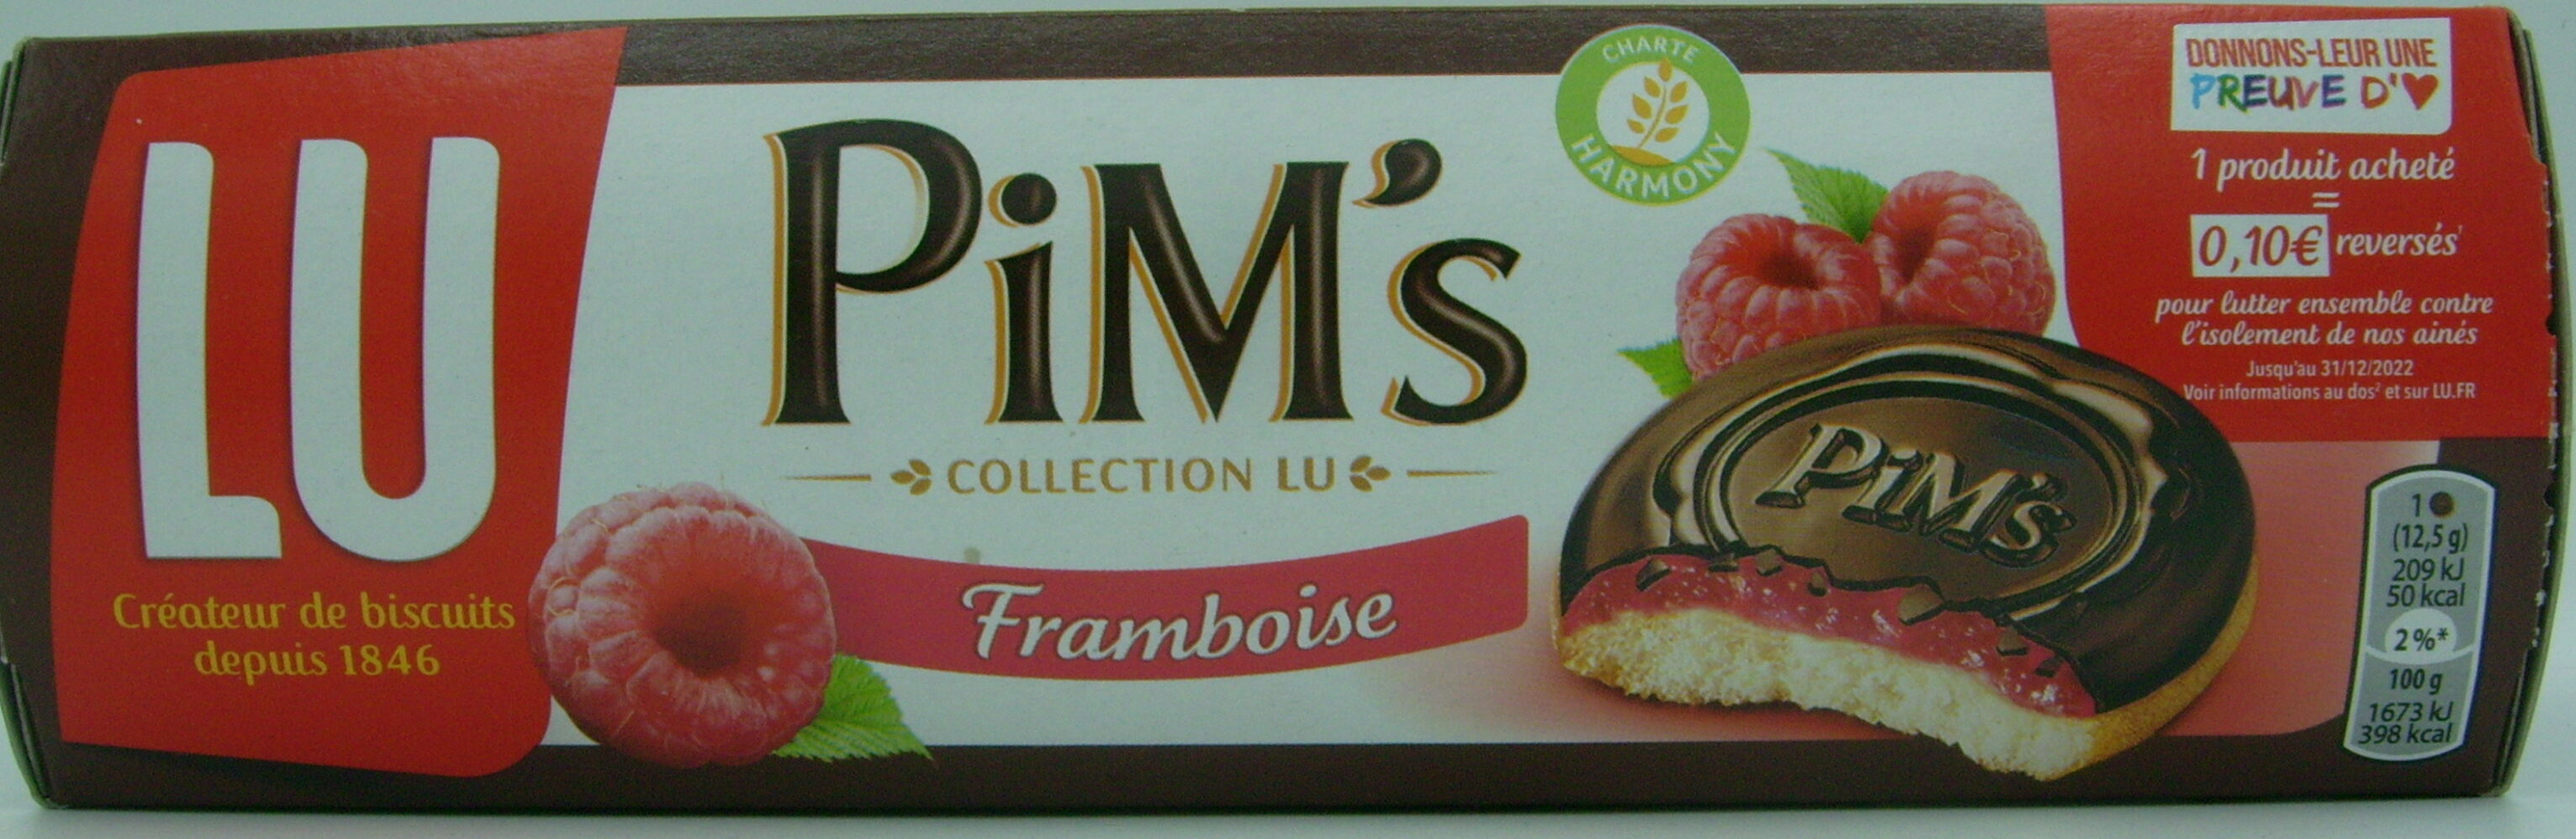 Pim's framboise - Product - fr